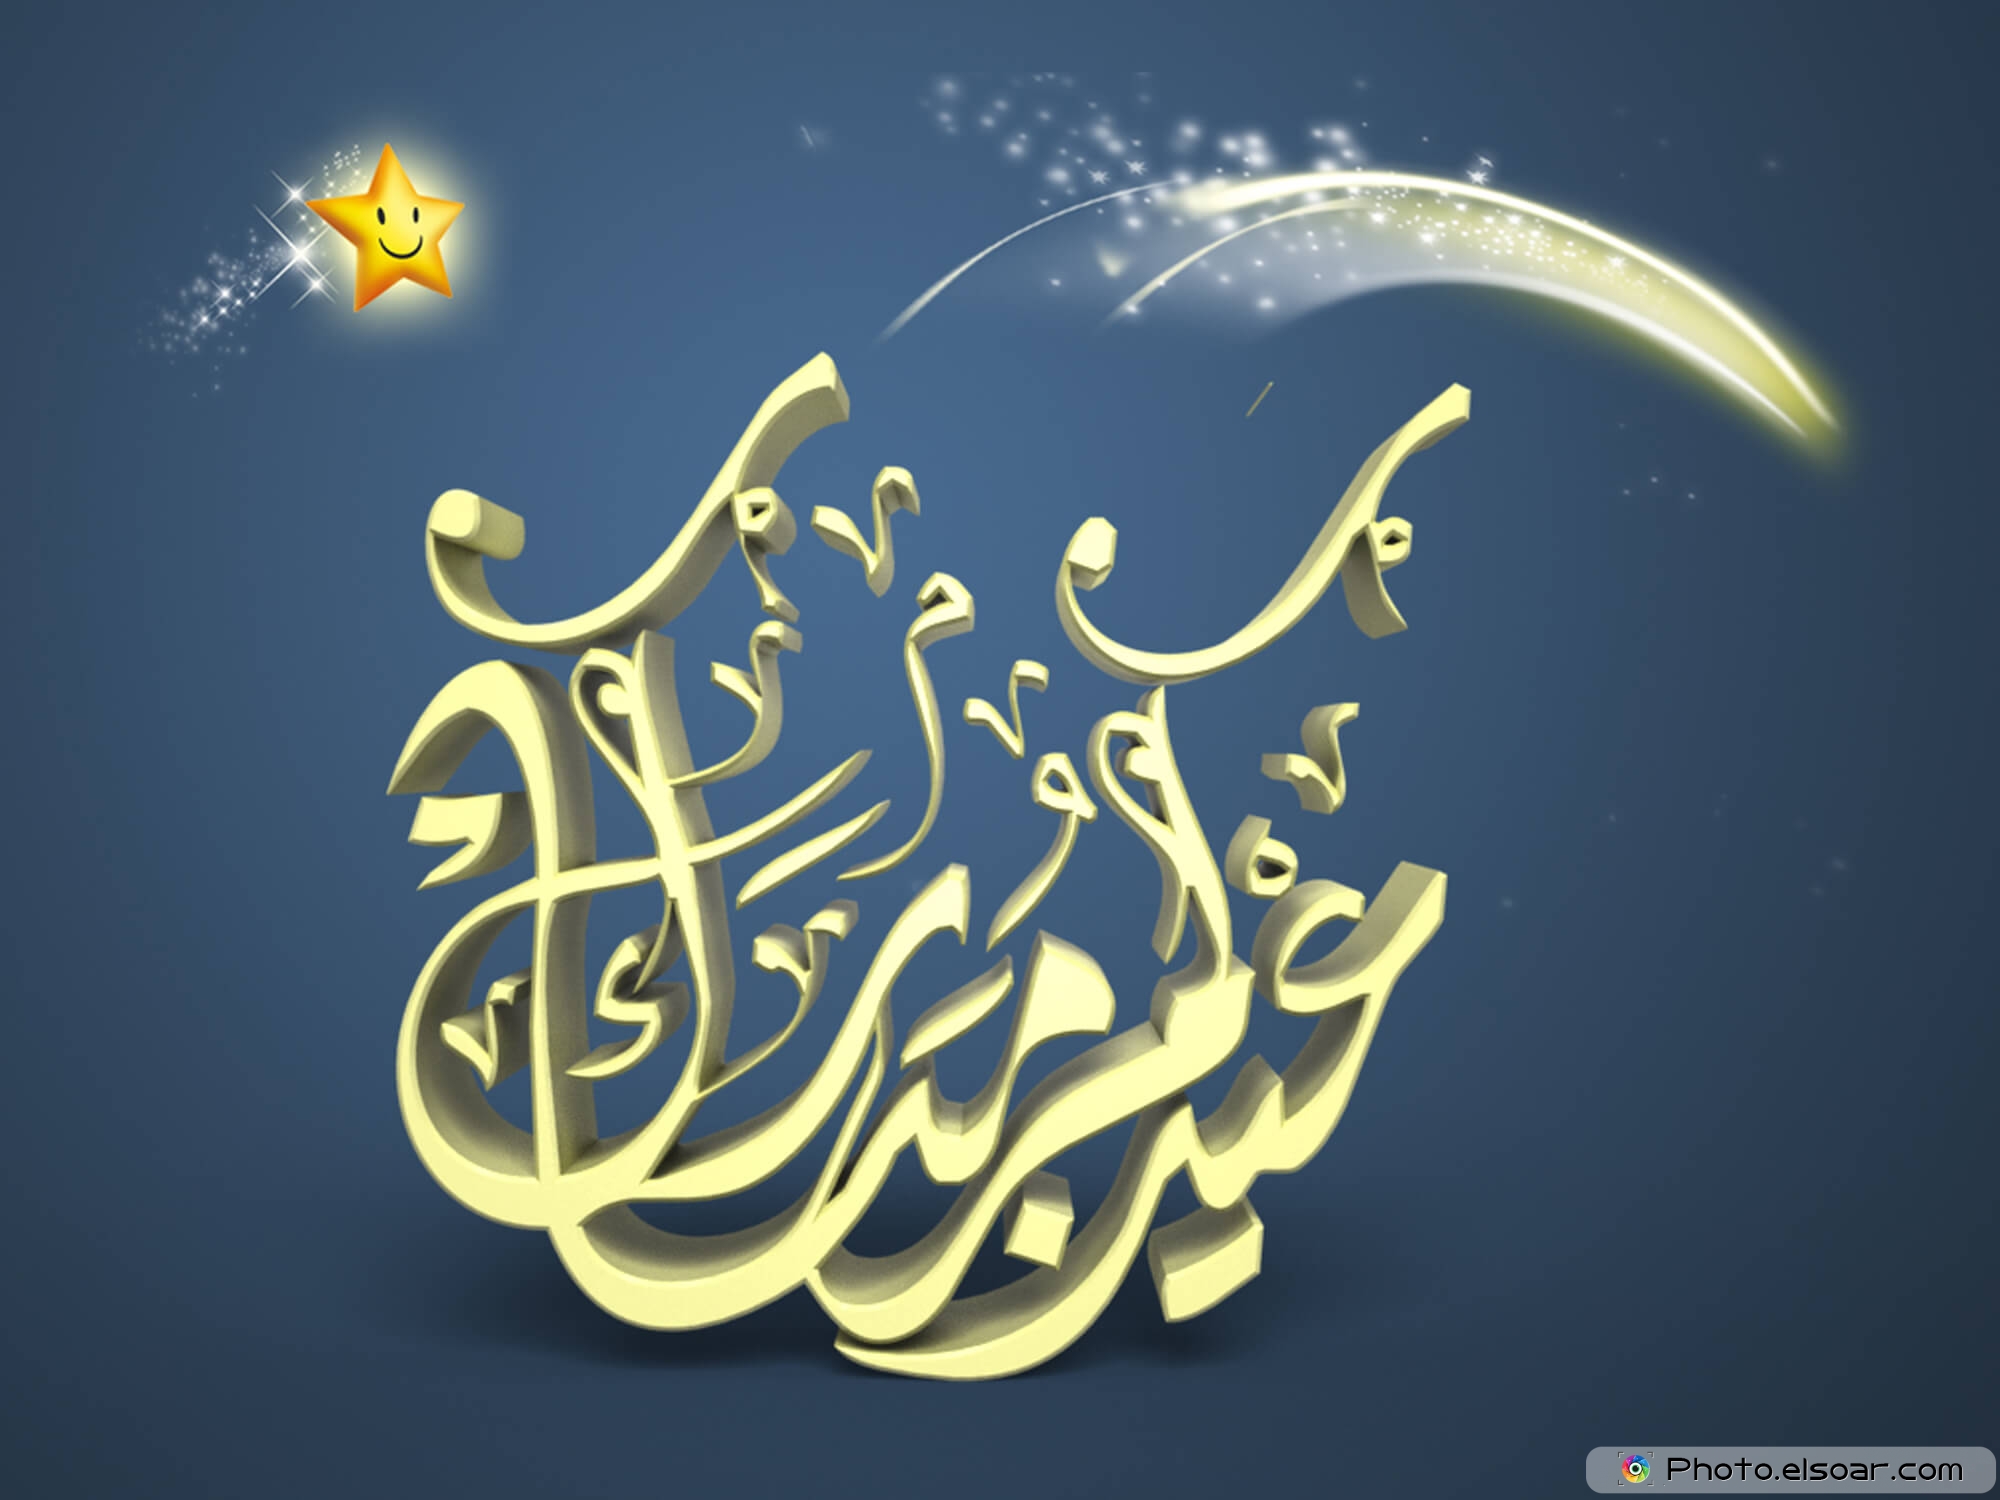 Happy Eid, Eid Mubarak, Eid Celebration, Eid Image - Eid Al-fitr - HD Wallpaper 